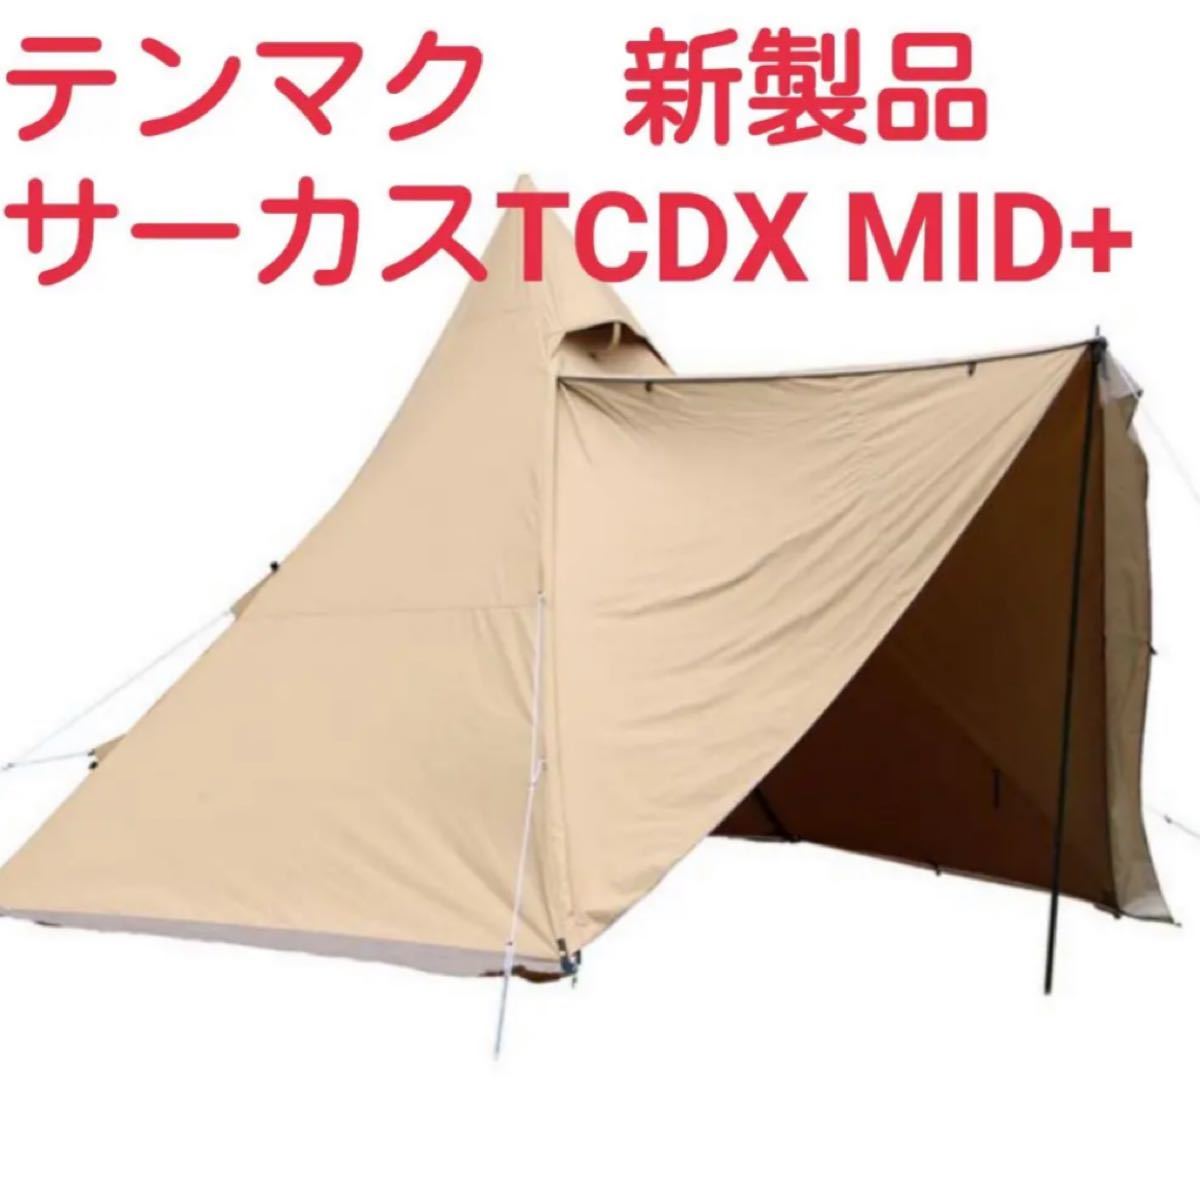 【即完売】テンマクデザイン サーカスTC DX MID+ 新品未使用品